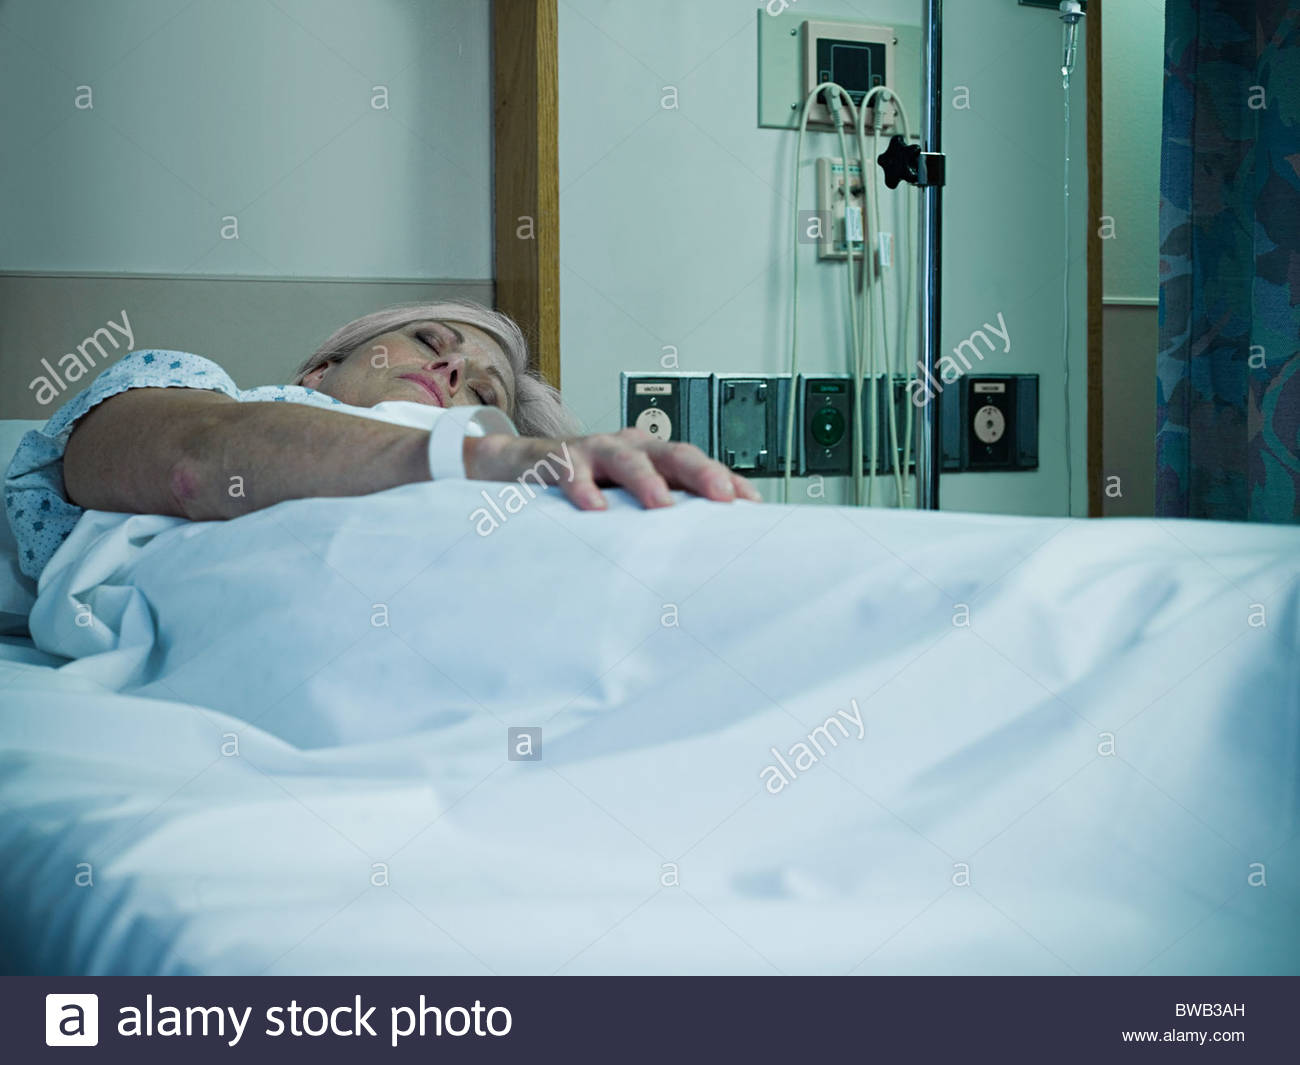 Больной трахнул свою жену и лечащую врачиху по очереди в больничной палате прямо на кровати 